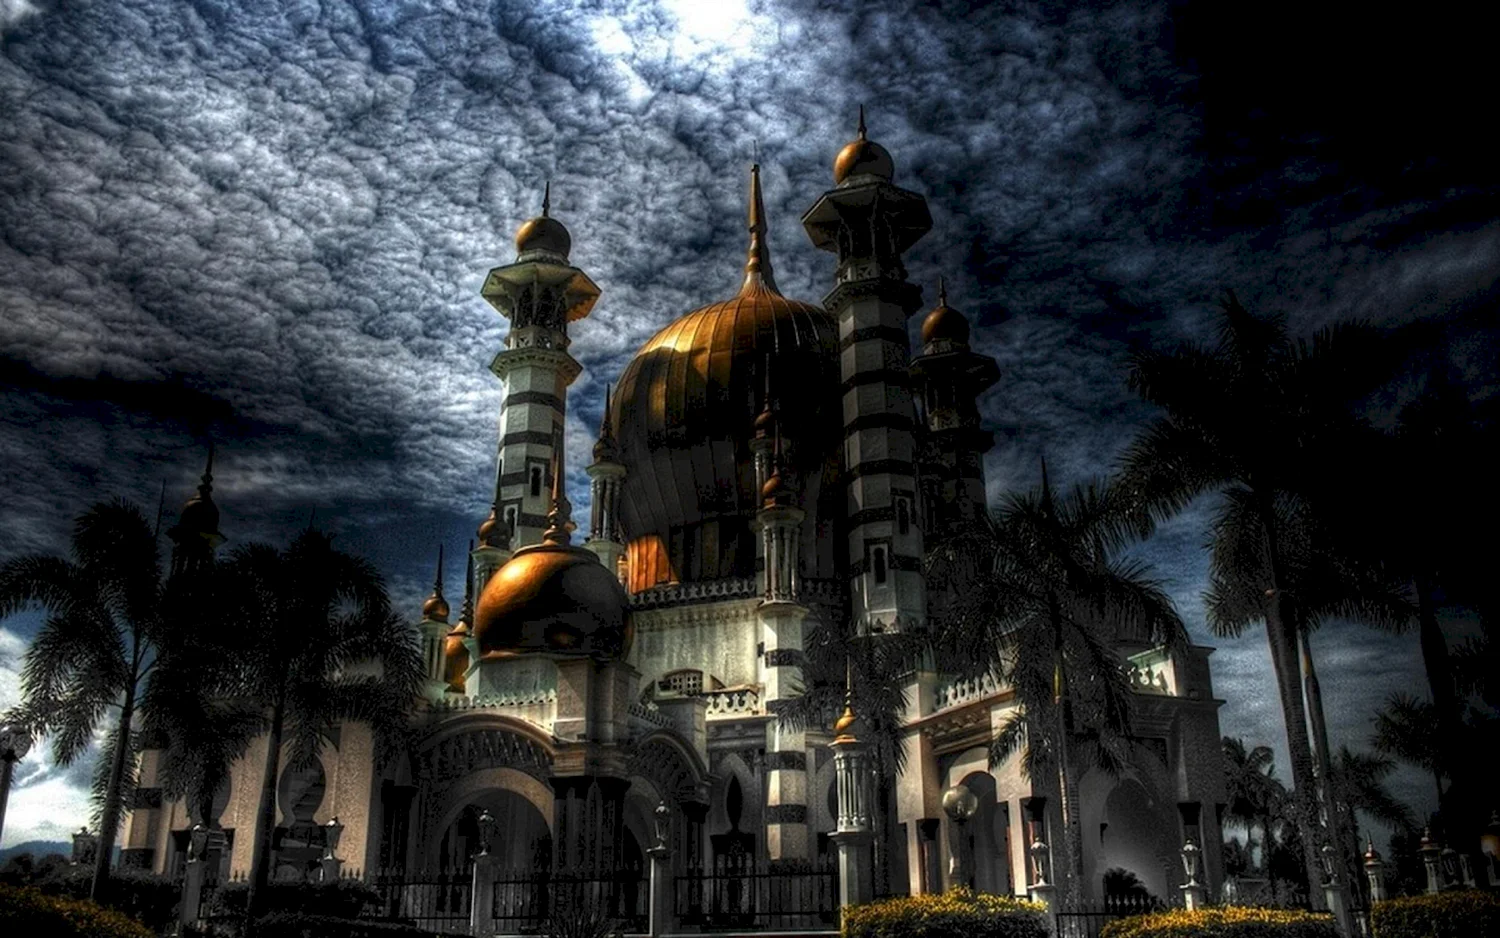 Мусульманский храм